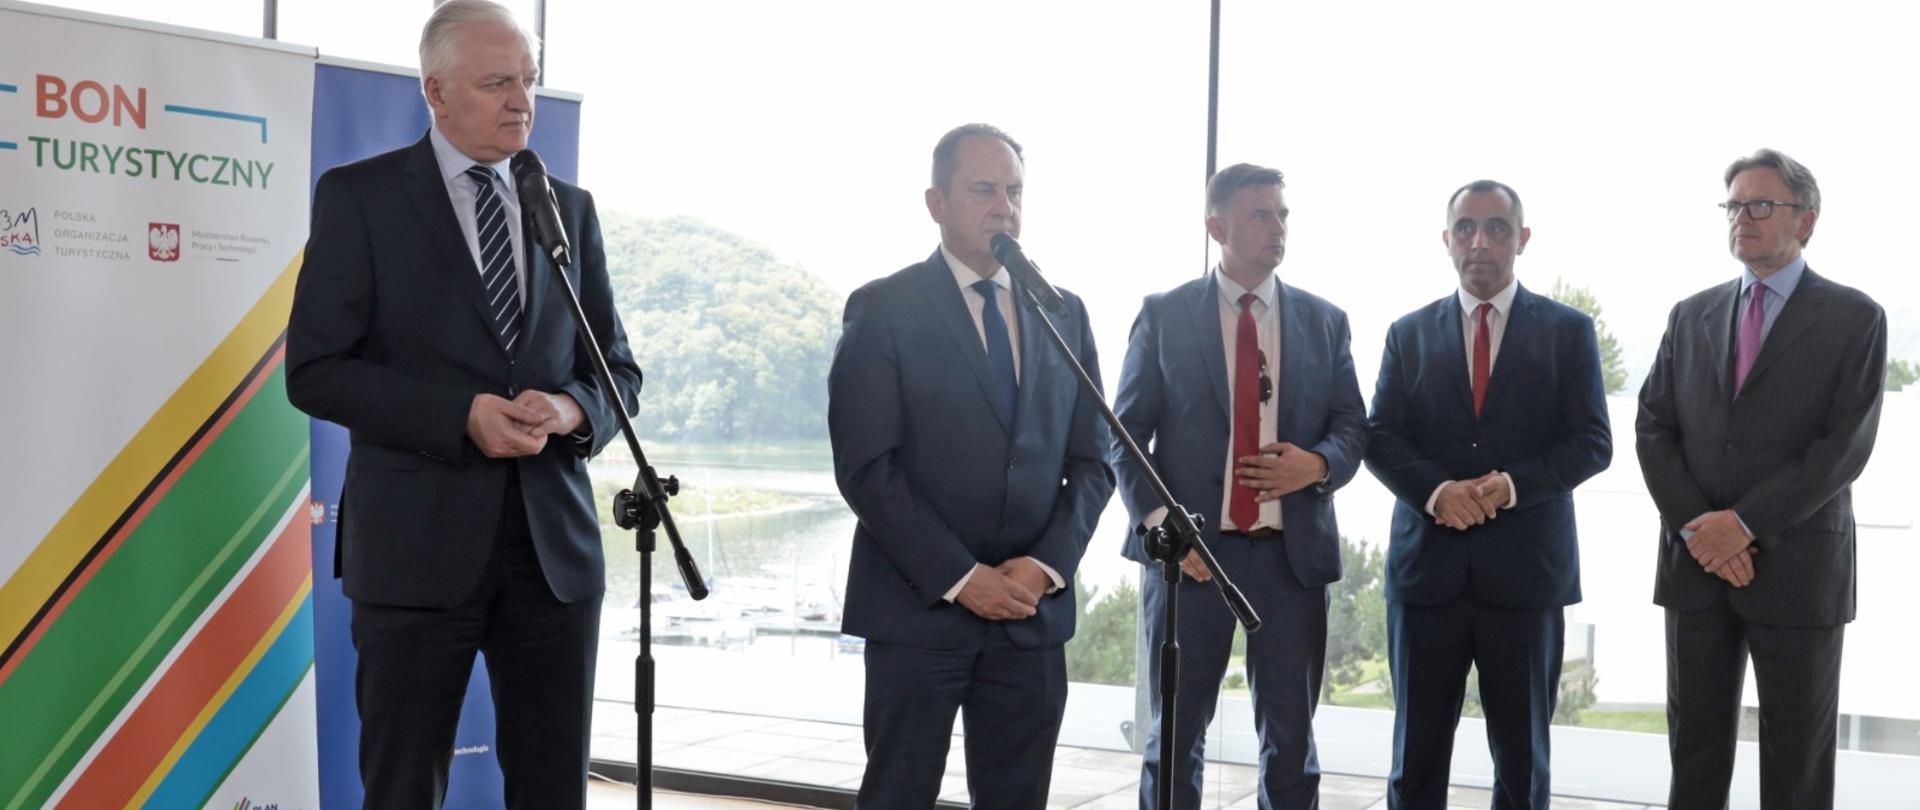 Wicepremier Jarosław Gowin, wiceminister Andrzej Gut-Mostowy stoją przy mikrofonach i mówią o Bonie Turystycznym. Obok przy szklanej ścianie stoi prezes POT Rafał Szlachta.